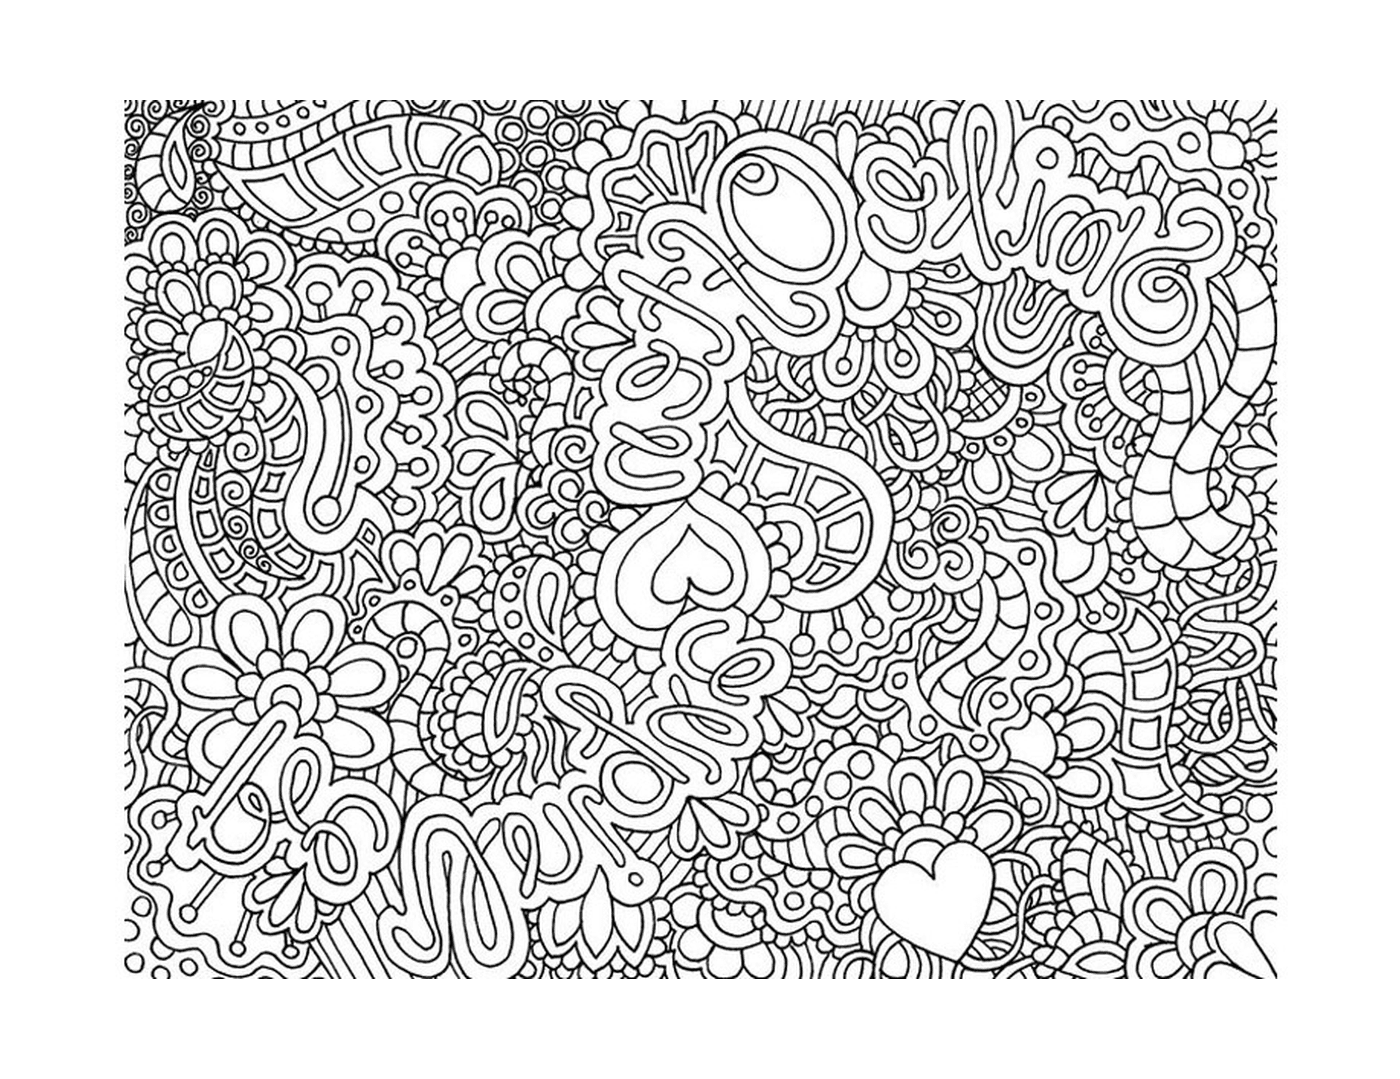  Página abstrata com doodles 